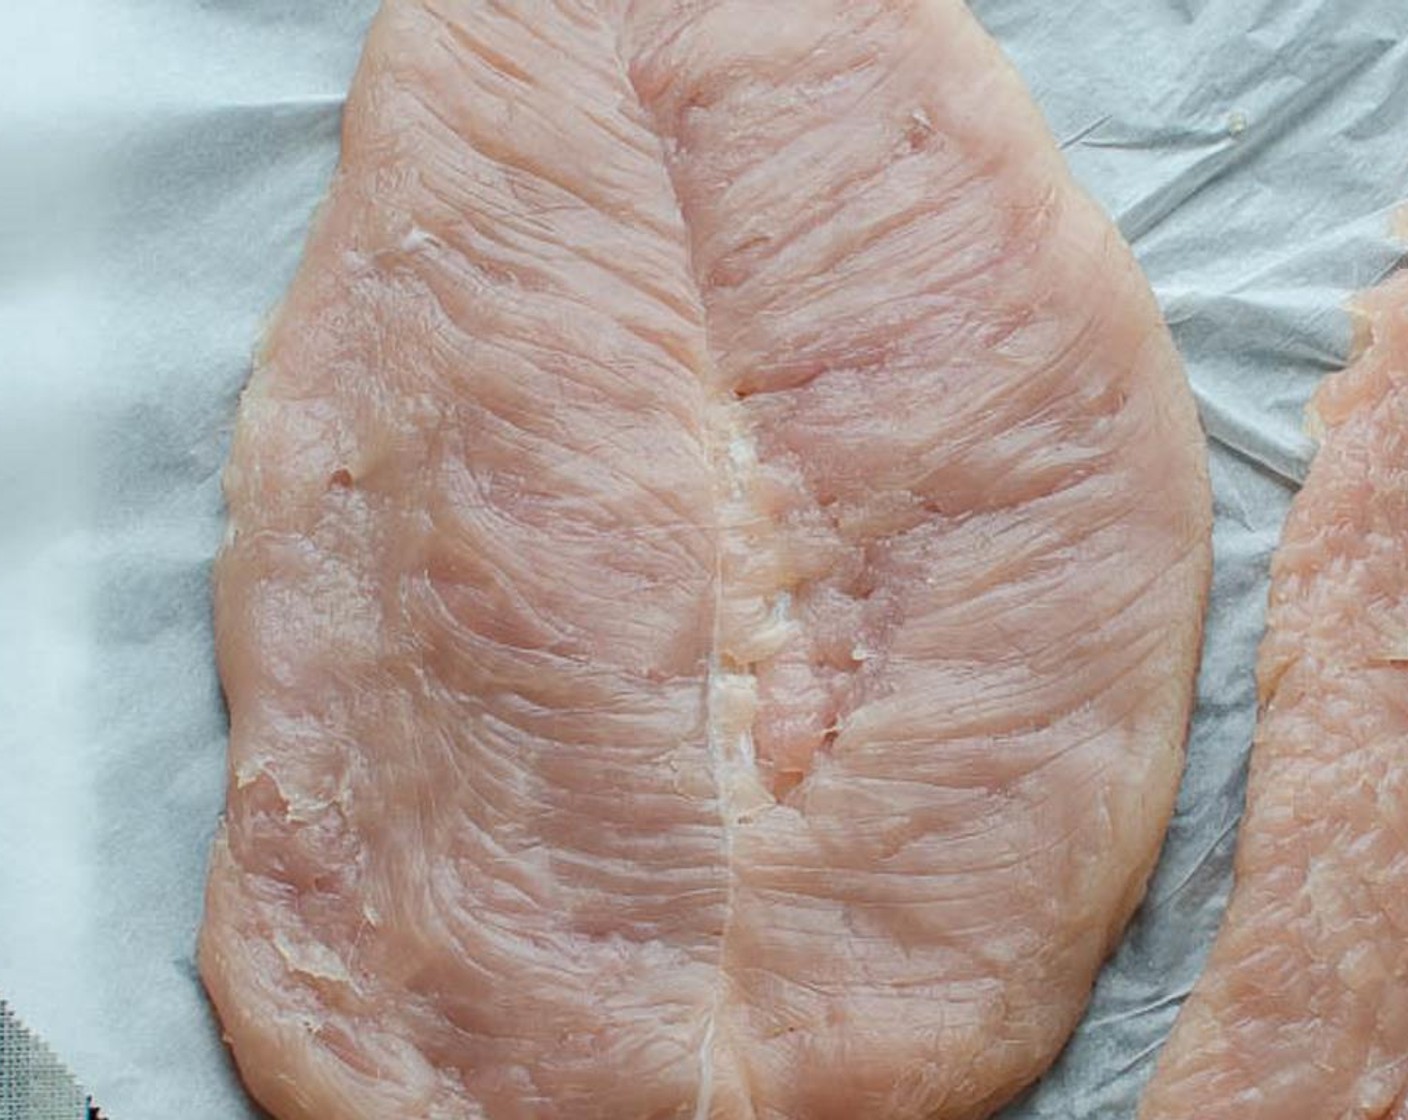 Schritt 7 Mit der flachen Seite eines Fleischklopfers auf das Fleisch einklopfen, bis es etwa 0.8 cm dick ist. Darauf achten, dass das Fleisch nicht einreisst. Beiseite stellen und mit dem zweiten Filet fortfahren. Beiseite stellen.